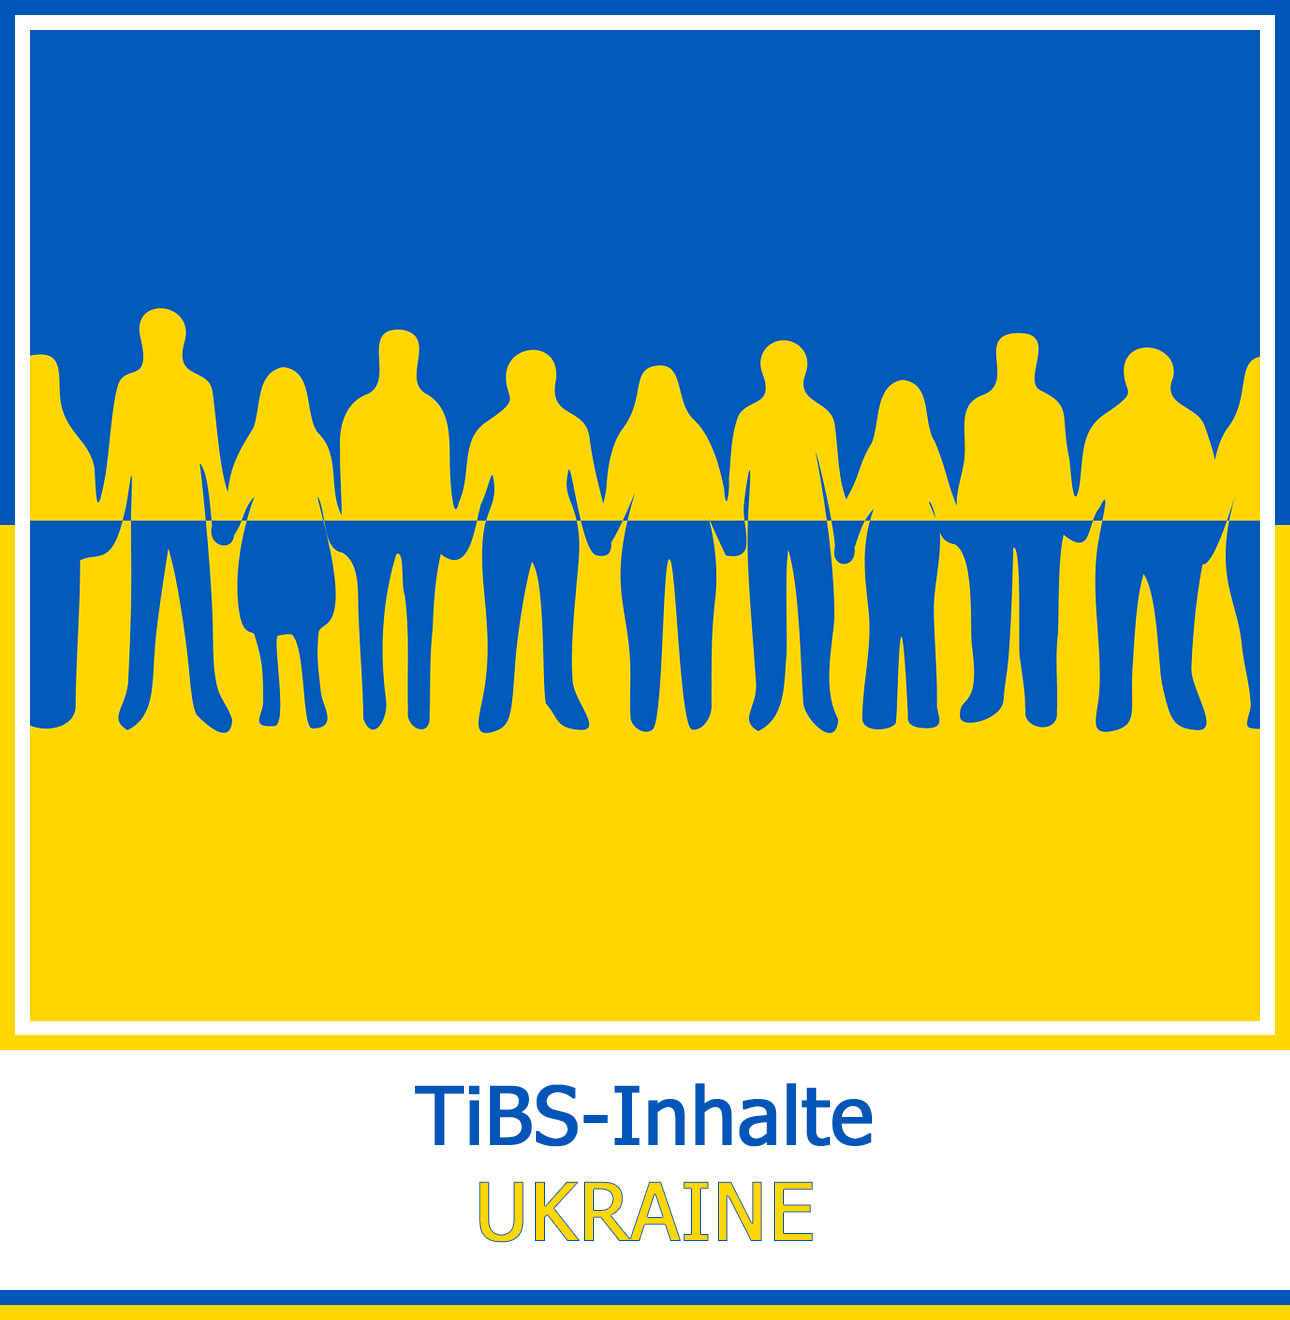 TiBS-Inhalte || UKRAINE